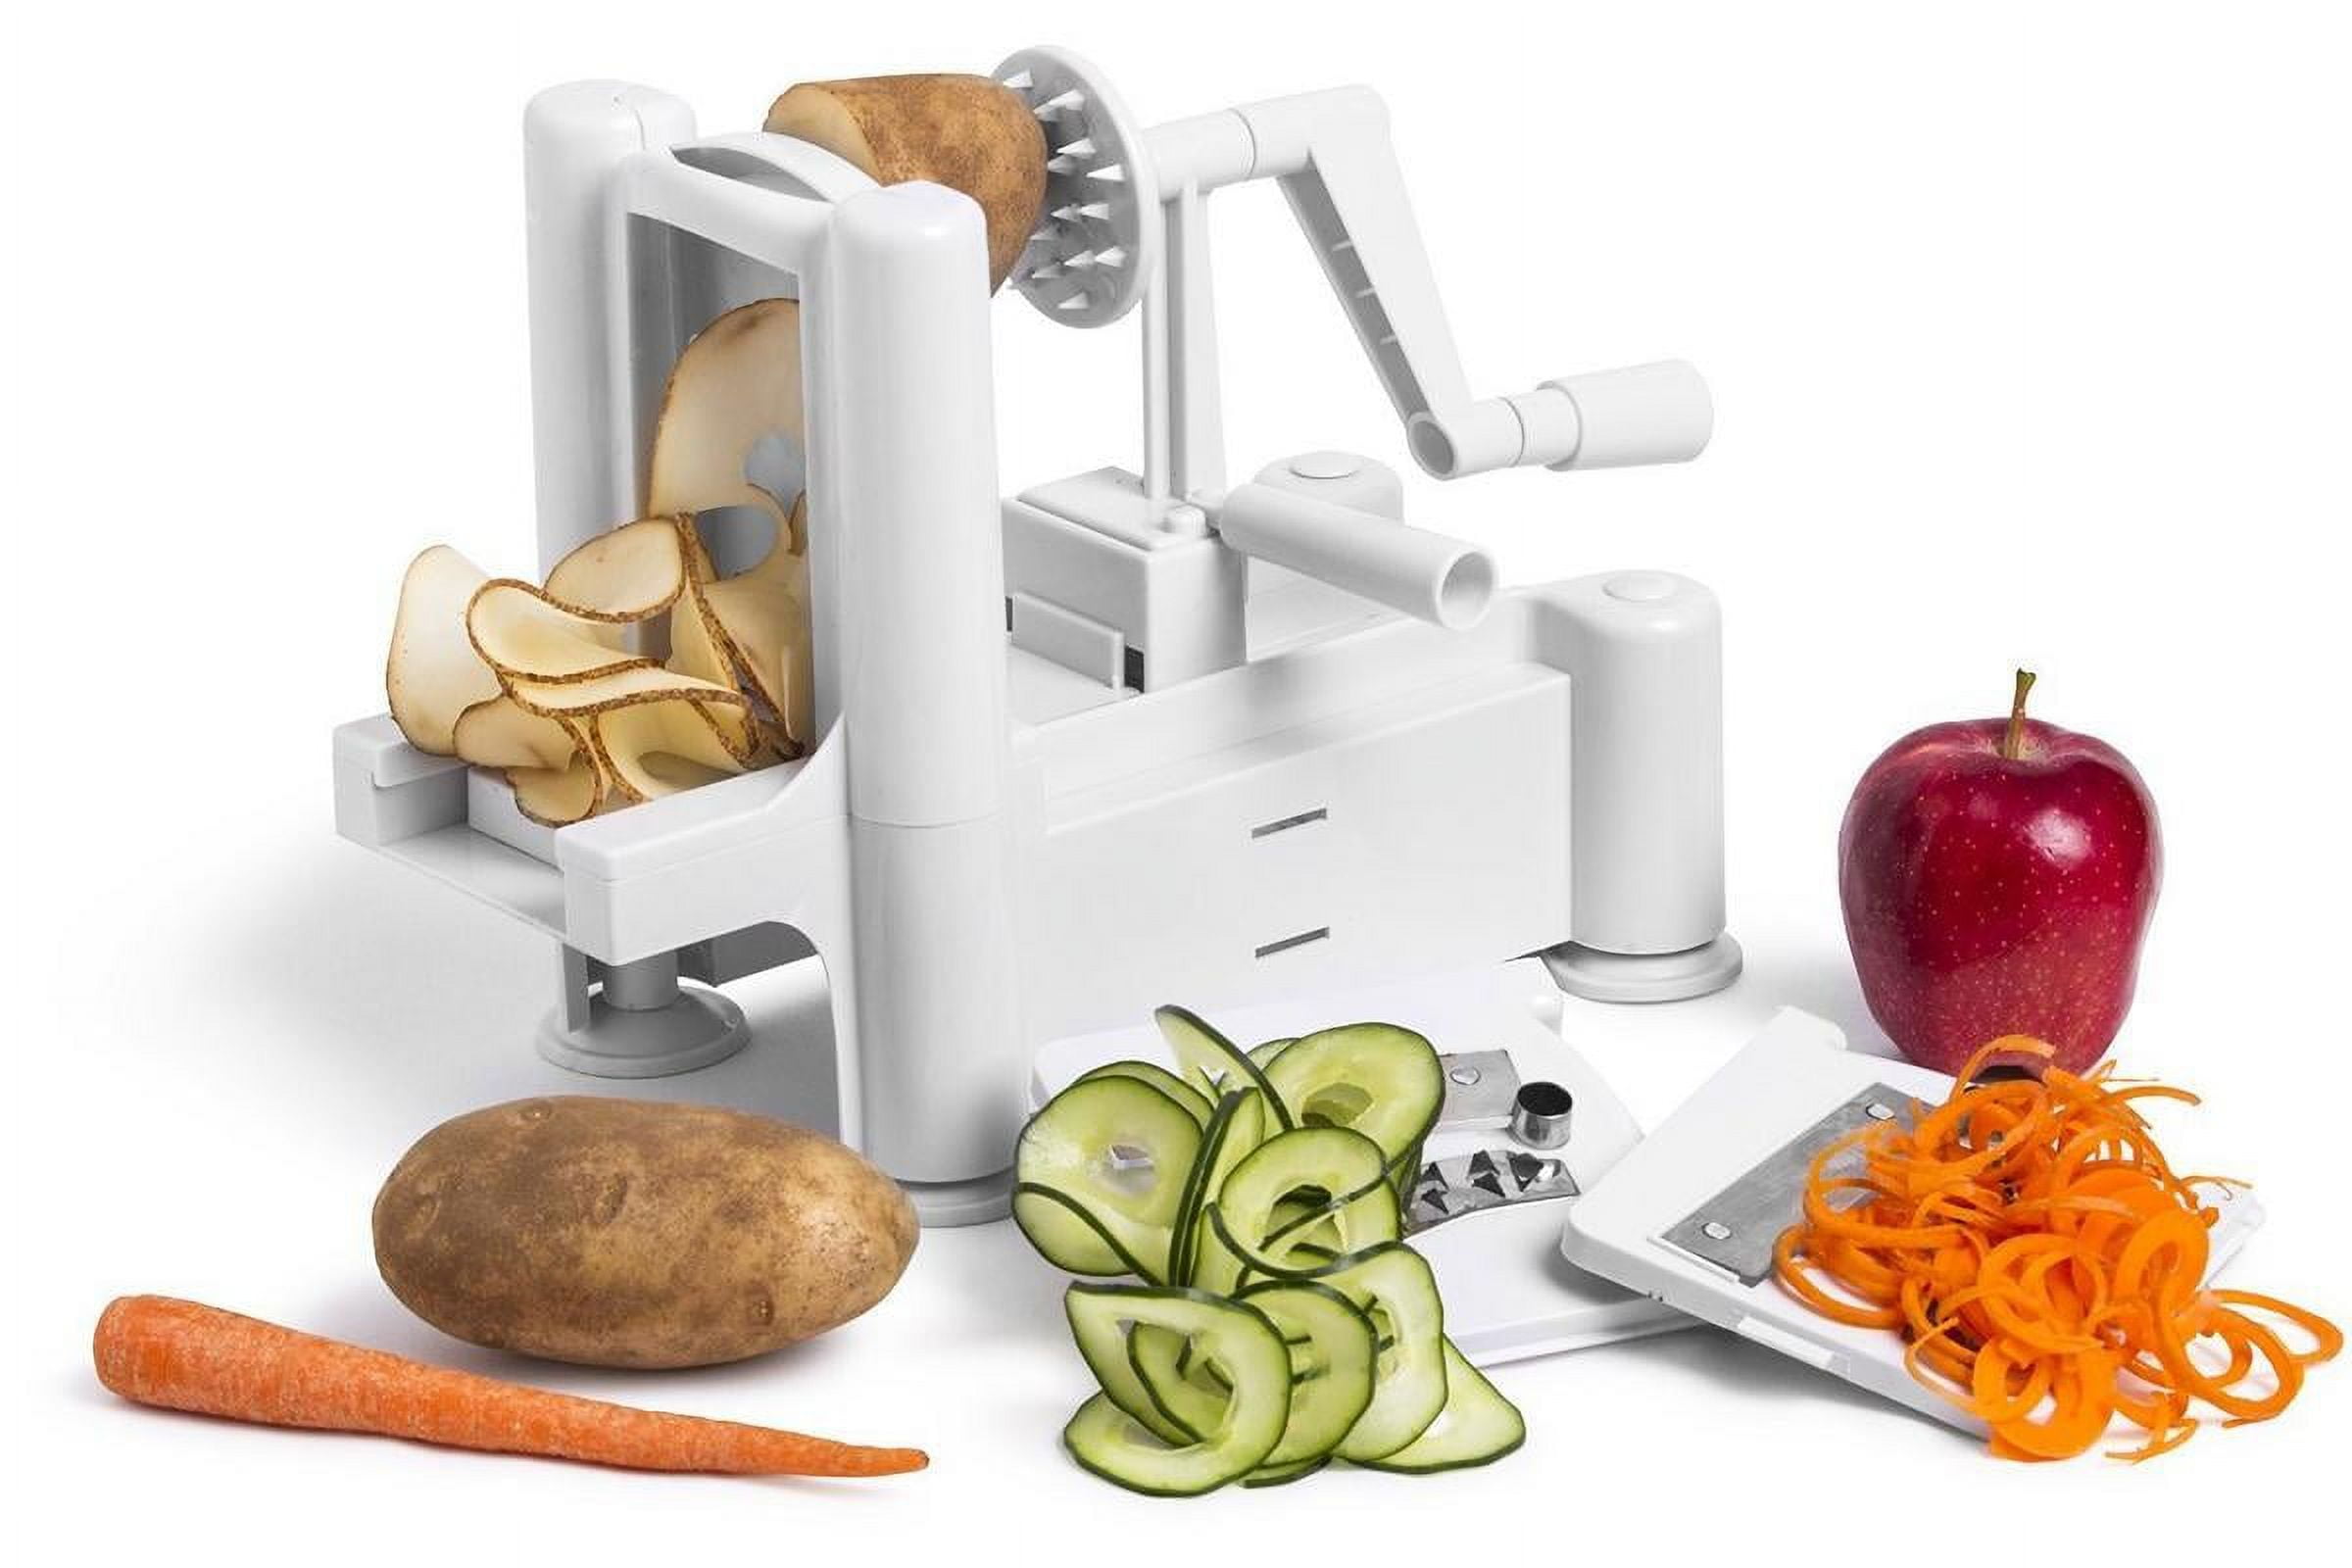 Spiralizer Pro Tri-Blade Vegetable Slicer - Inspire Uplift